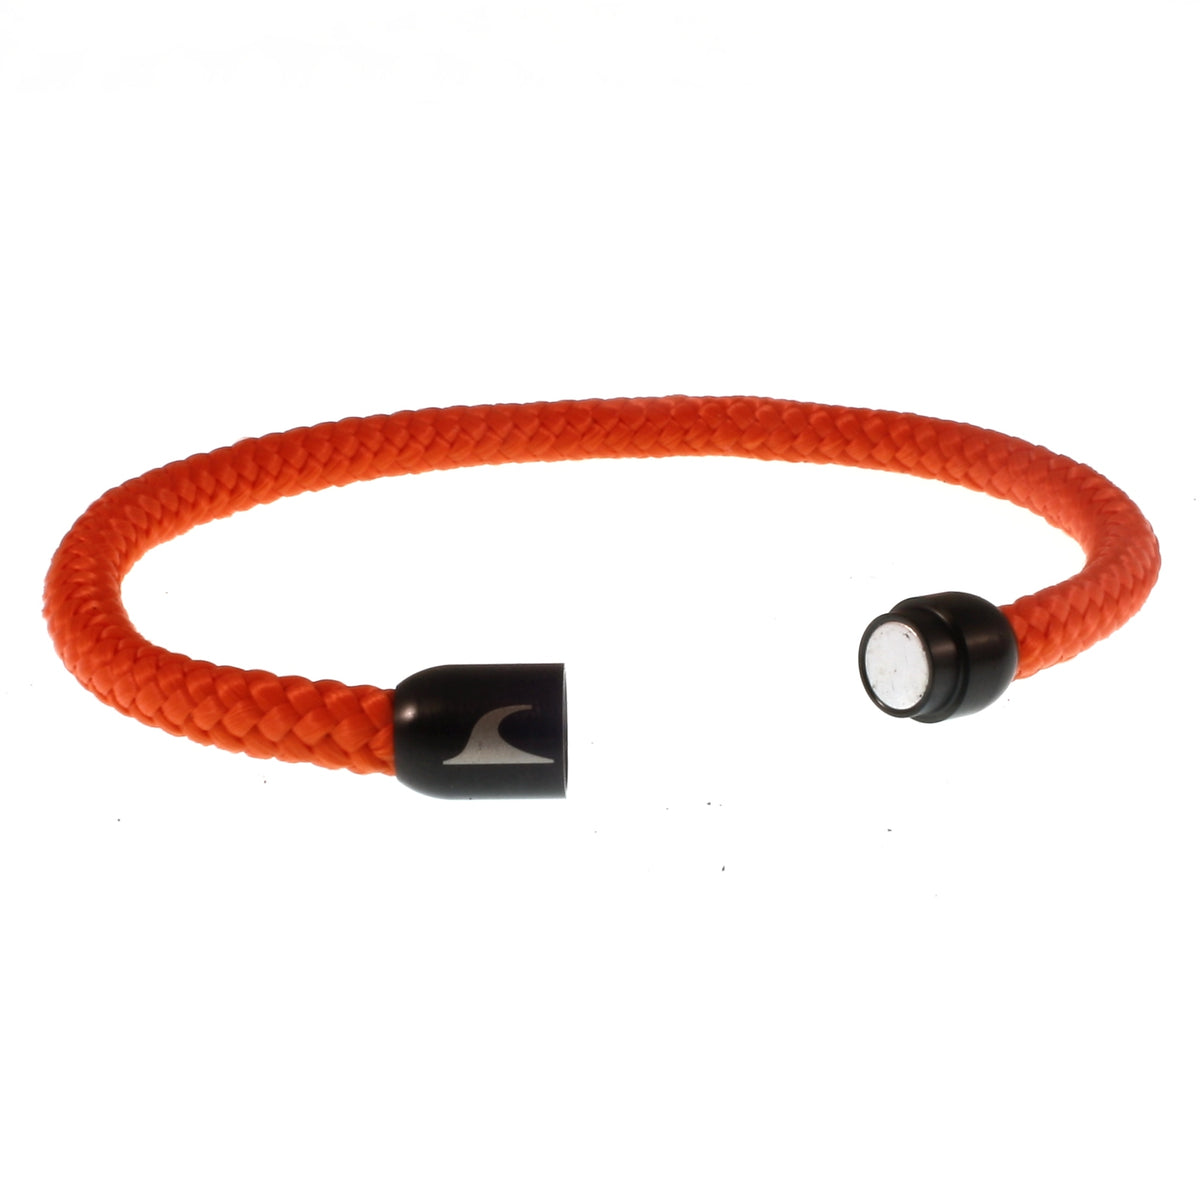 Herren-segeltau-armband-damen-sylt-orange-schwarz-geflochten-Edelstahlverschluss-offen-wavepirate-shop-st